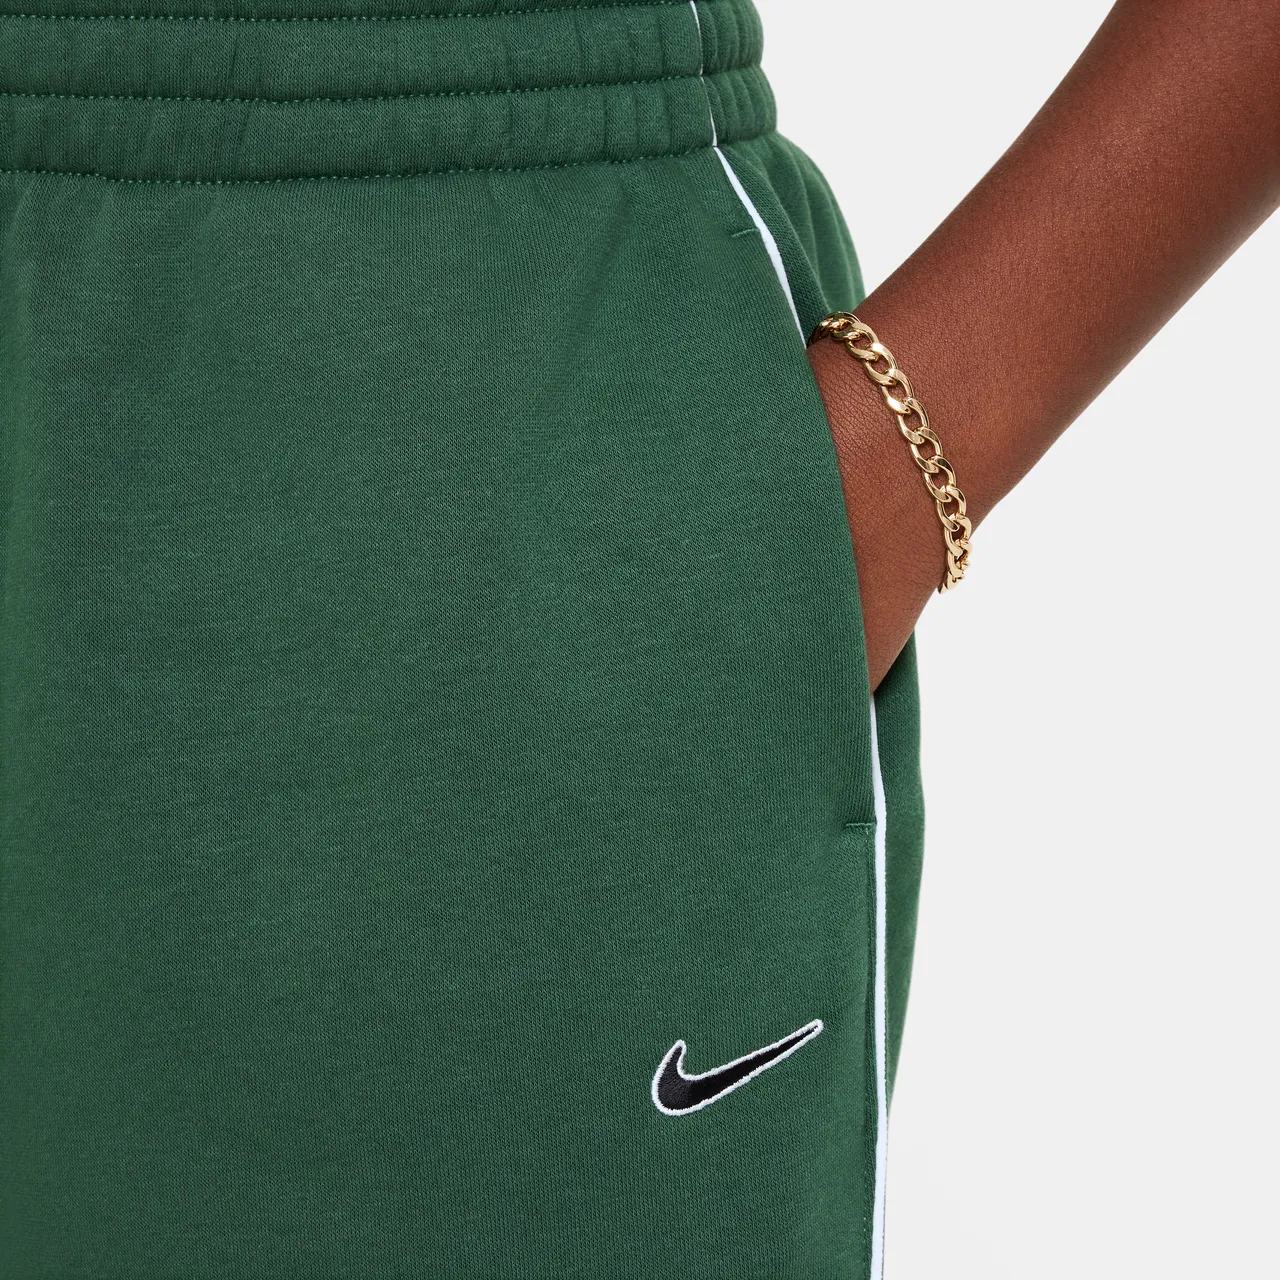 Nike Sportswear Older Kids' (Girls') Oversized Fleece Trousers - Green - Cotton